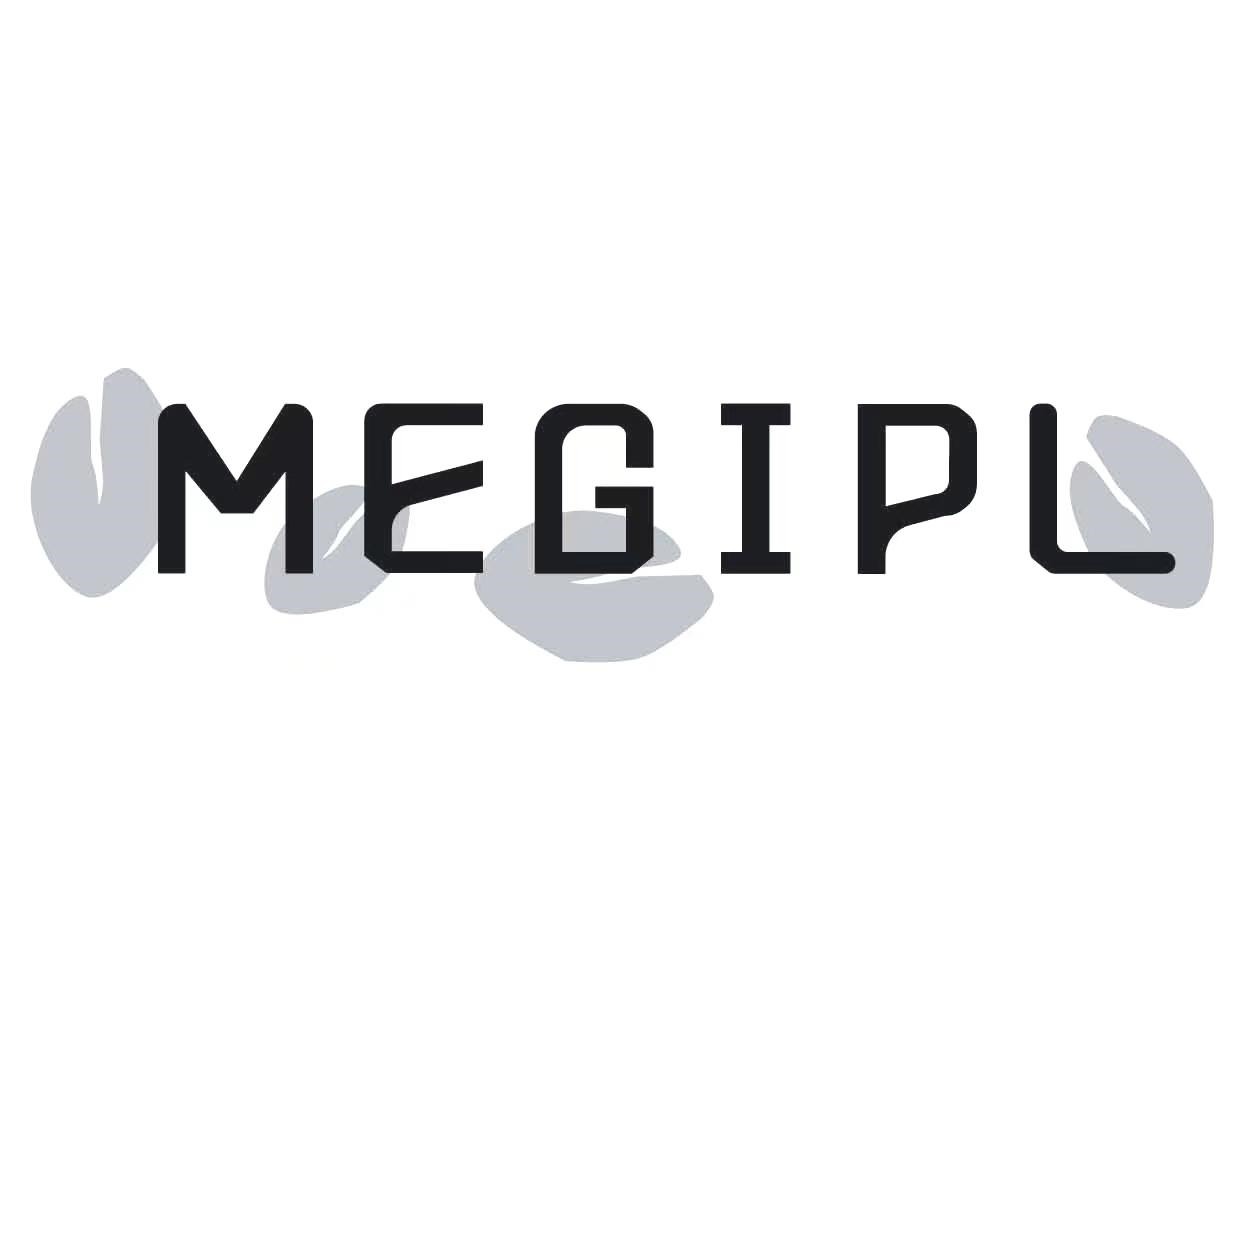 MEGIPL